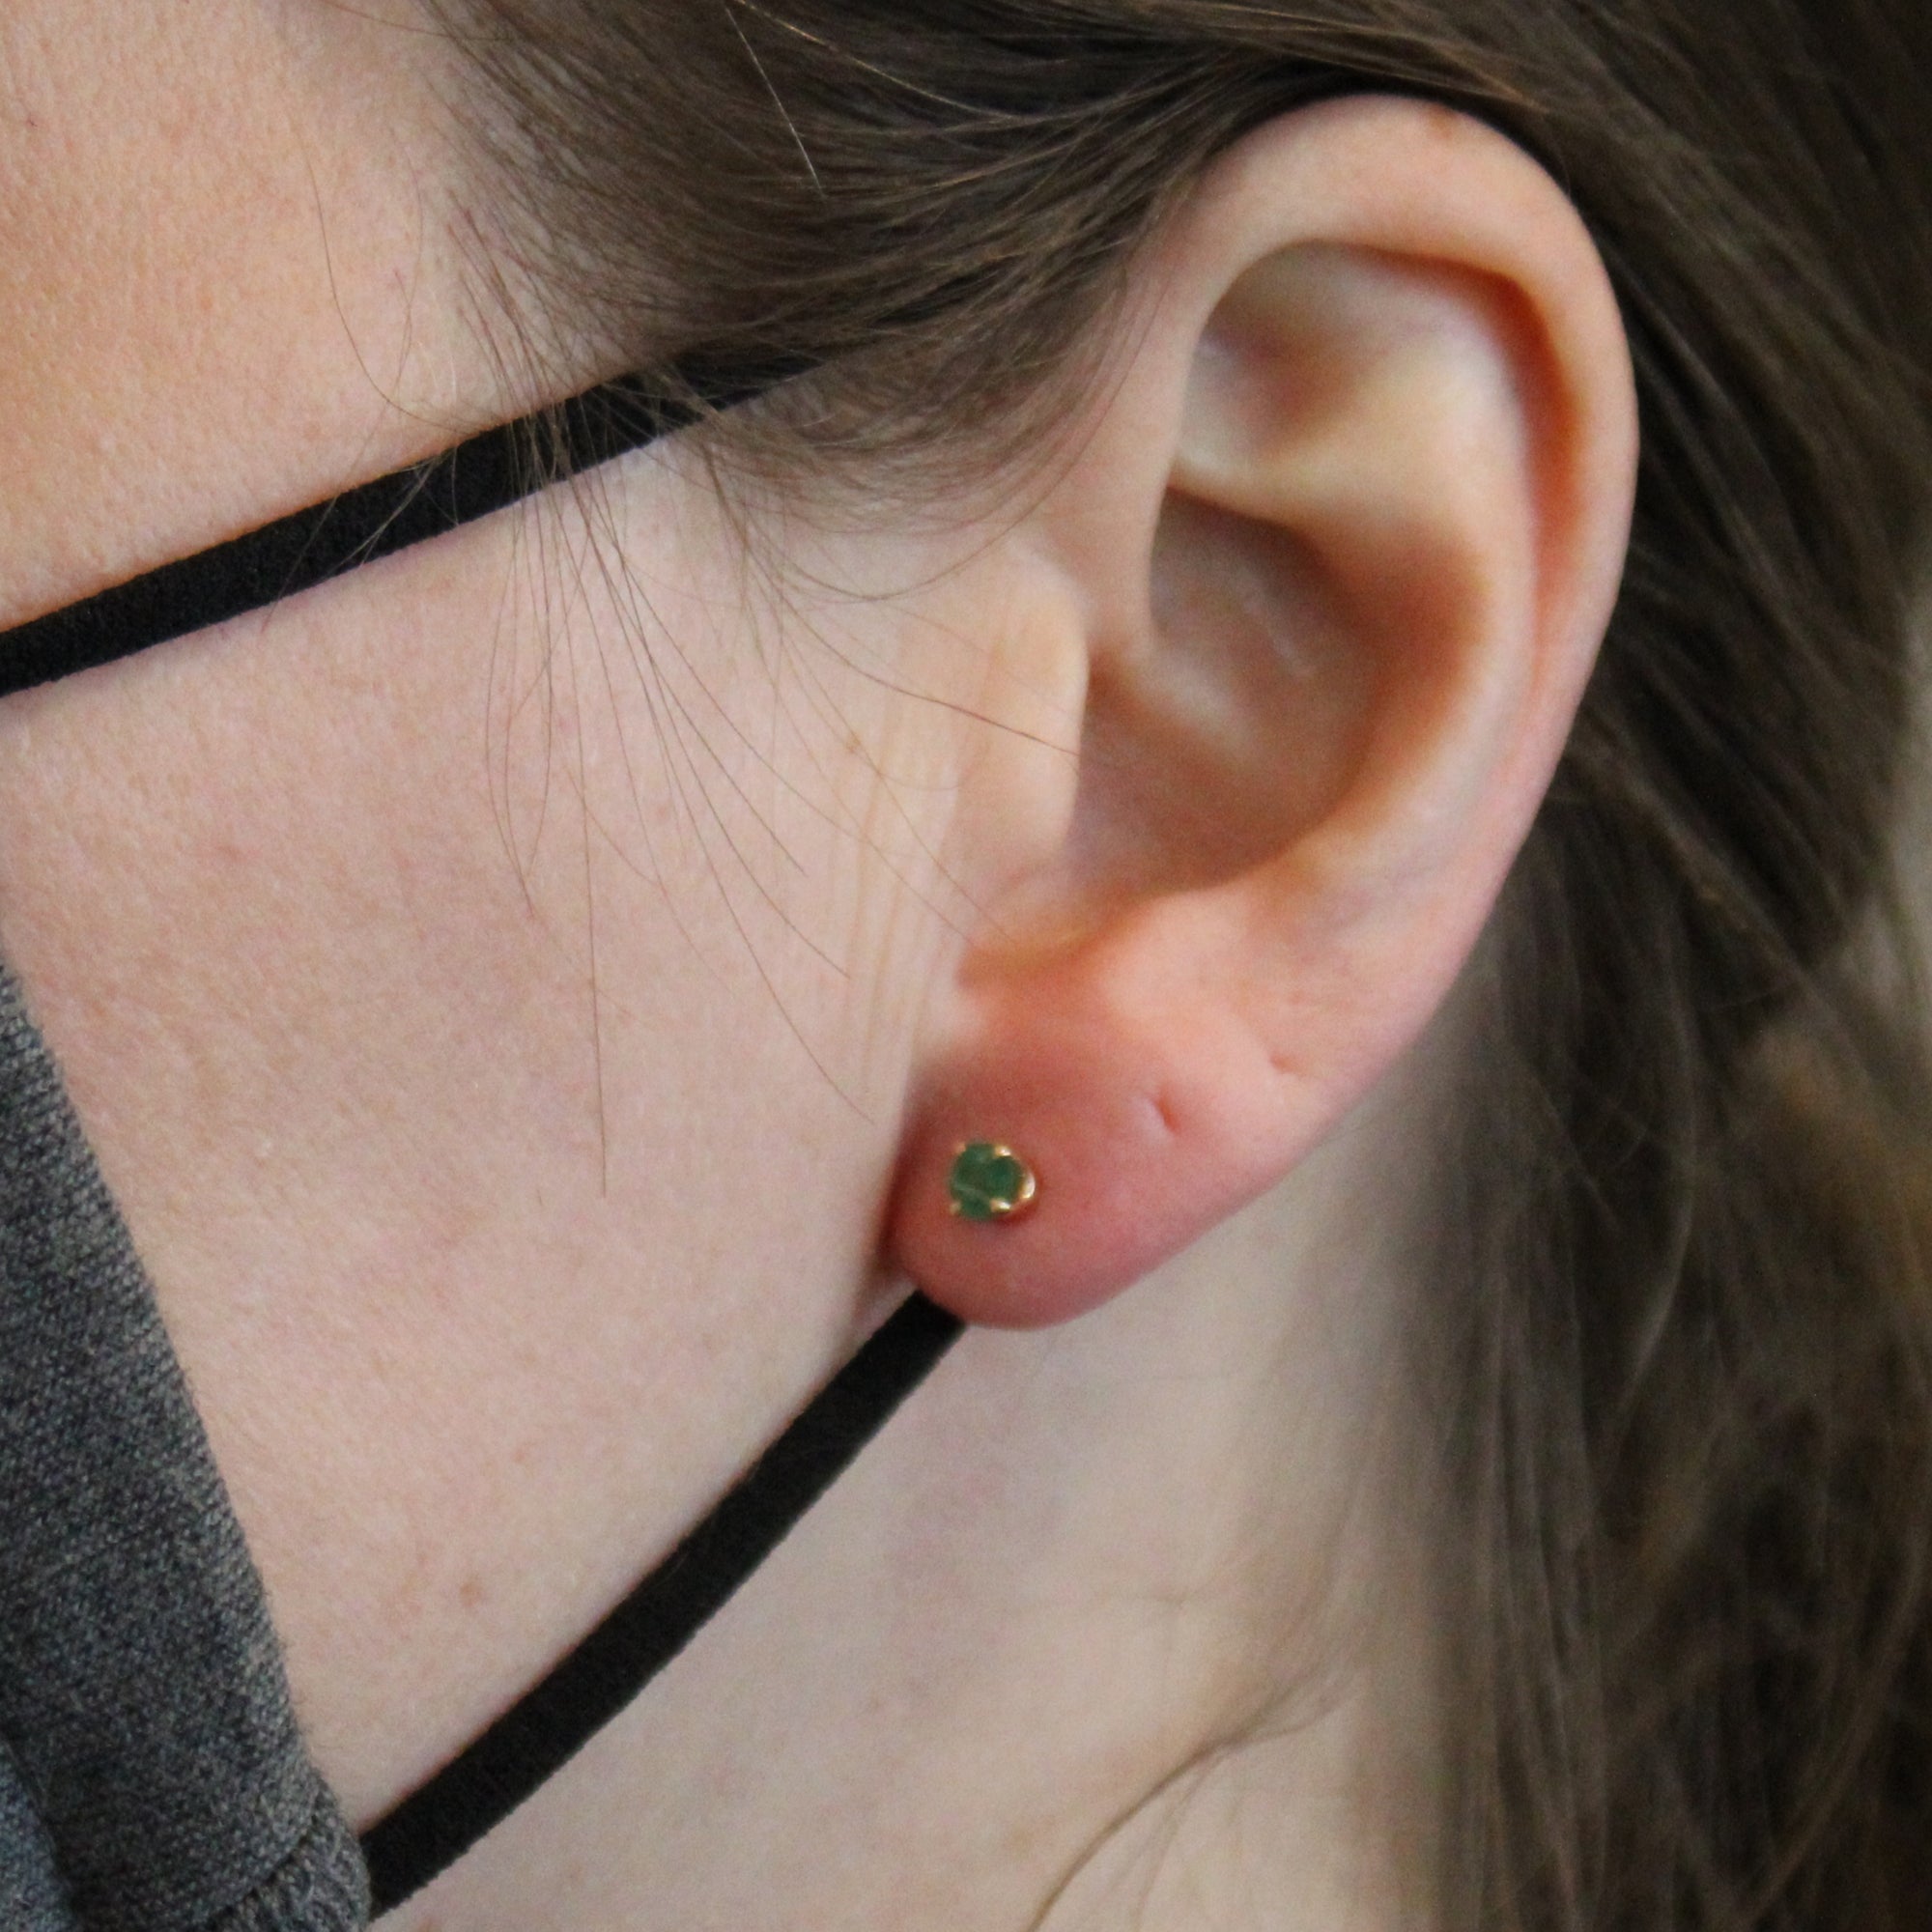 Emerald Stud Earrings | 0.40ctw |